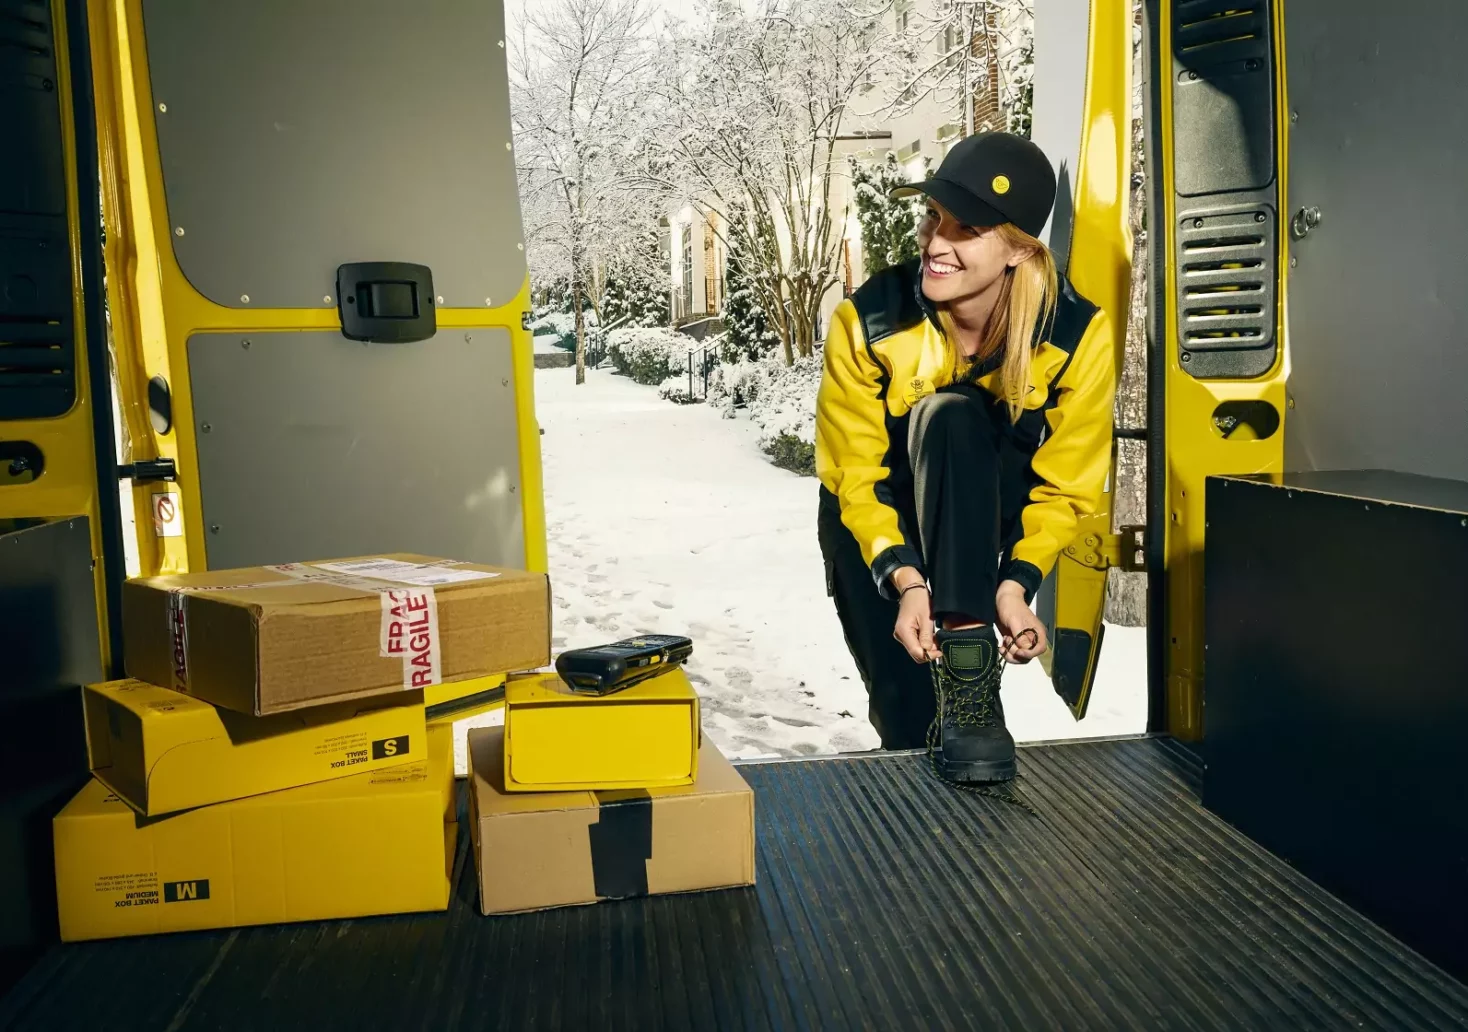 Foto in Beitrag von 5min.at: Zu sehen ist eine Frau beim Post bzw Pakete ausliefern.